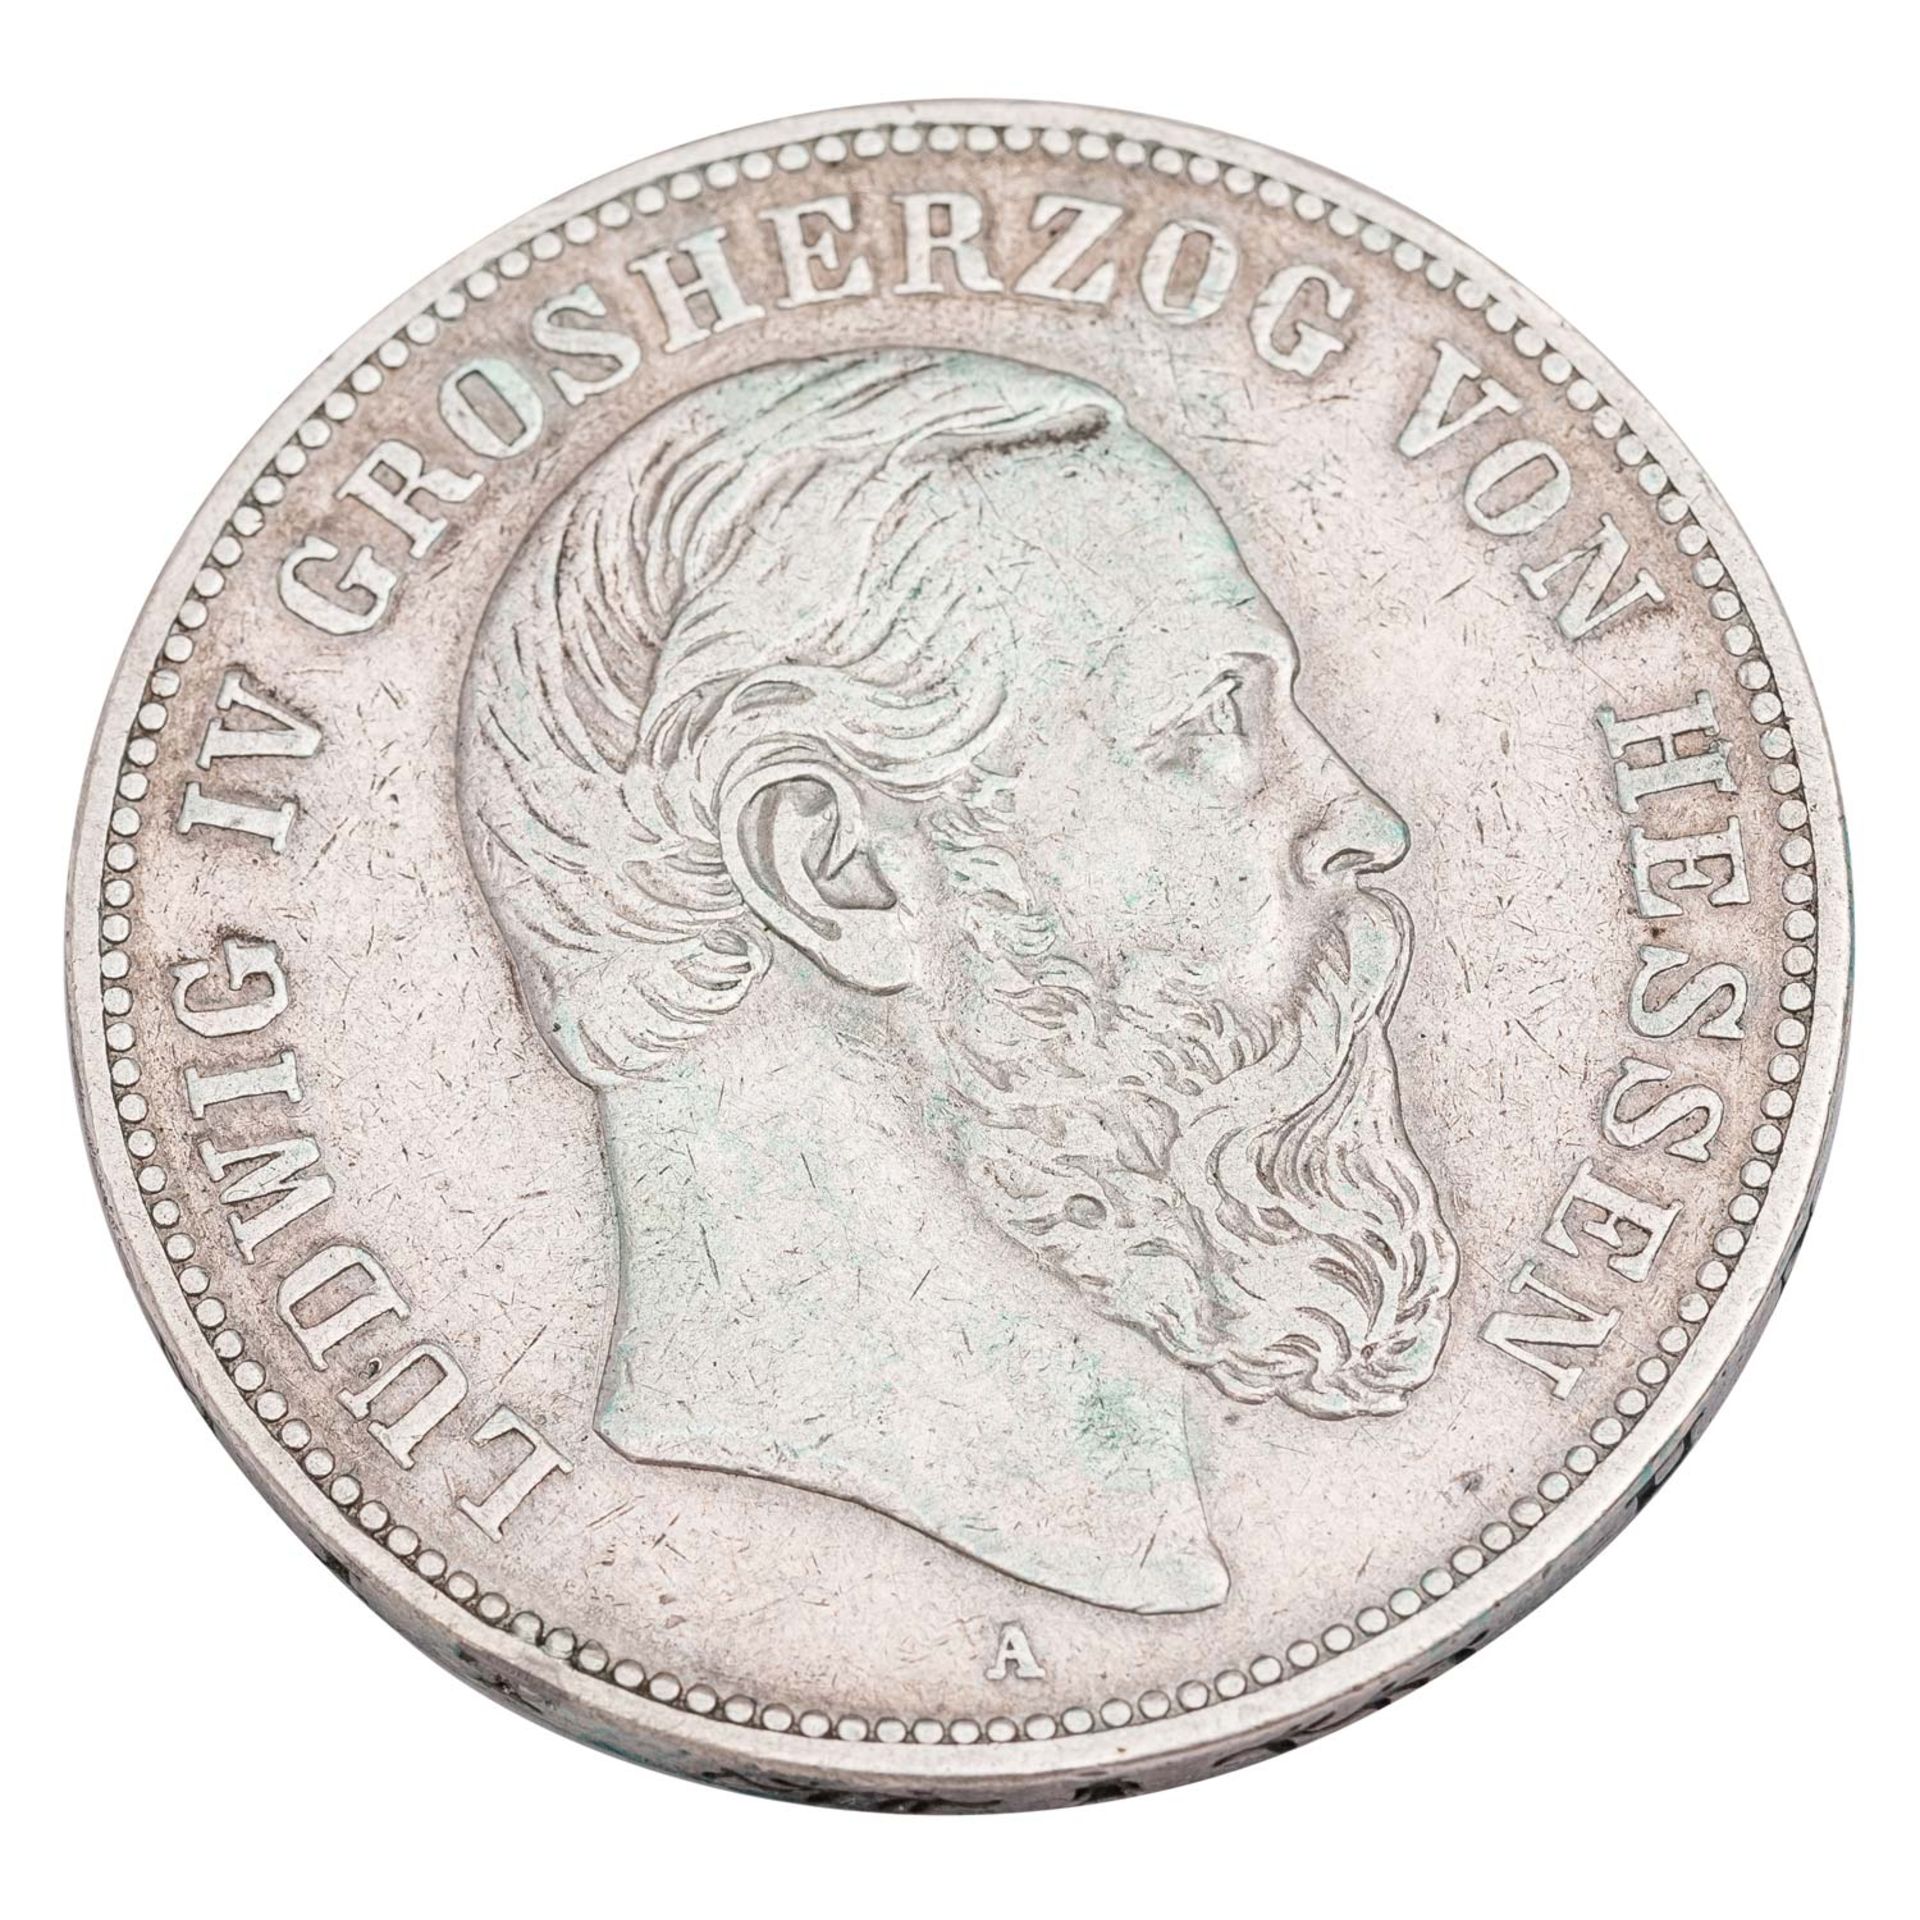 Deutsches Kaiserreich / Hessen - 5 Mark 1888/A, Grossherzog Ludwig IV., - Image 2 of 3